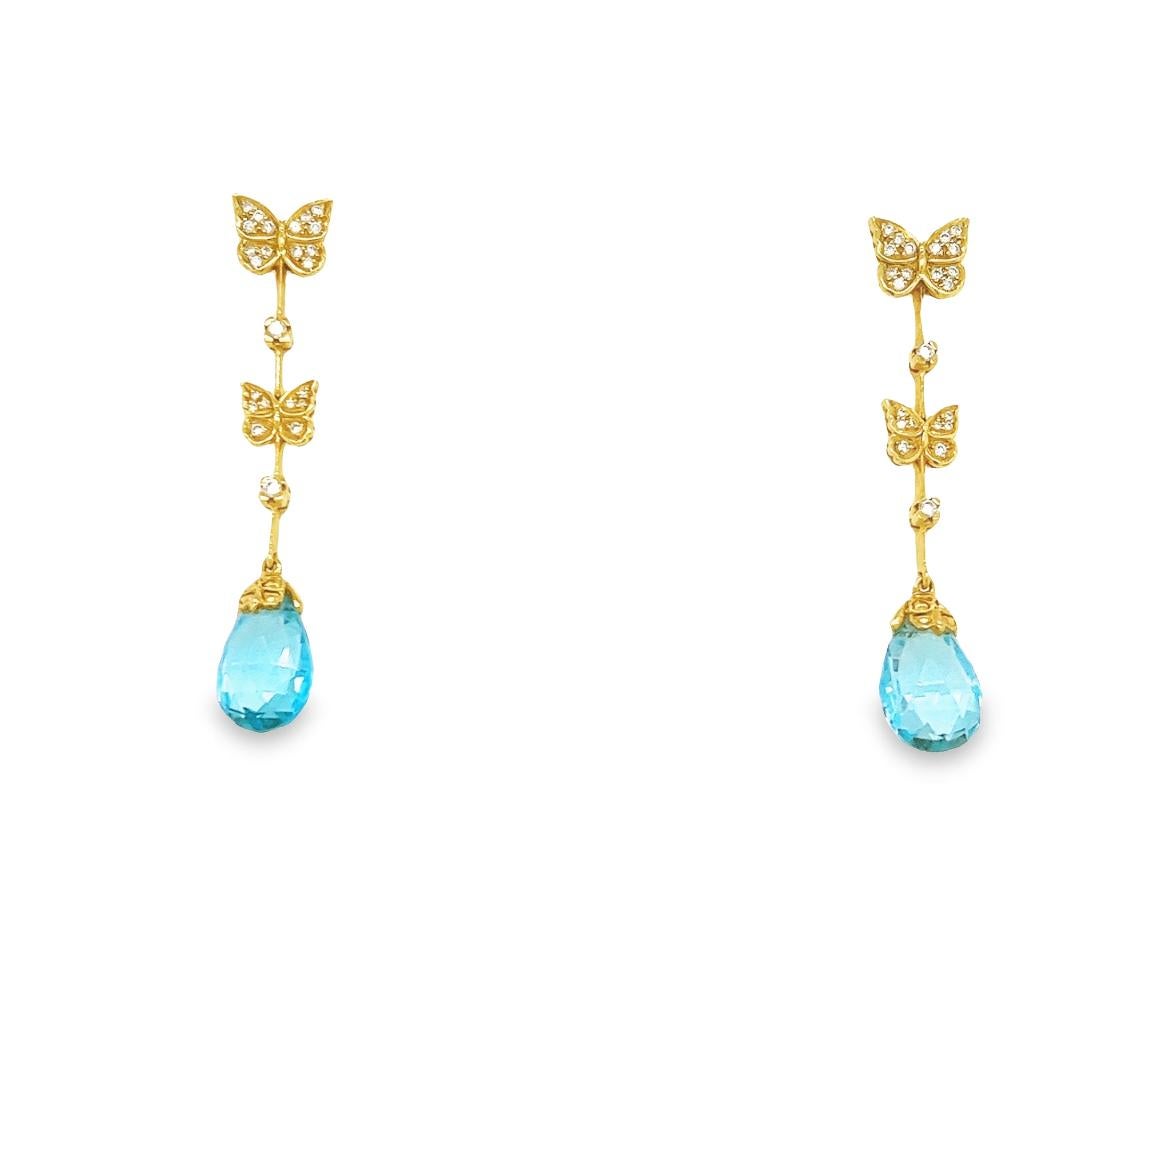 Carrera Y Carrera Baile Mariposa Butterfly Diamond Topaz 18k Necklace & Earrings For Sale 1